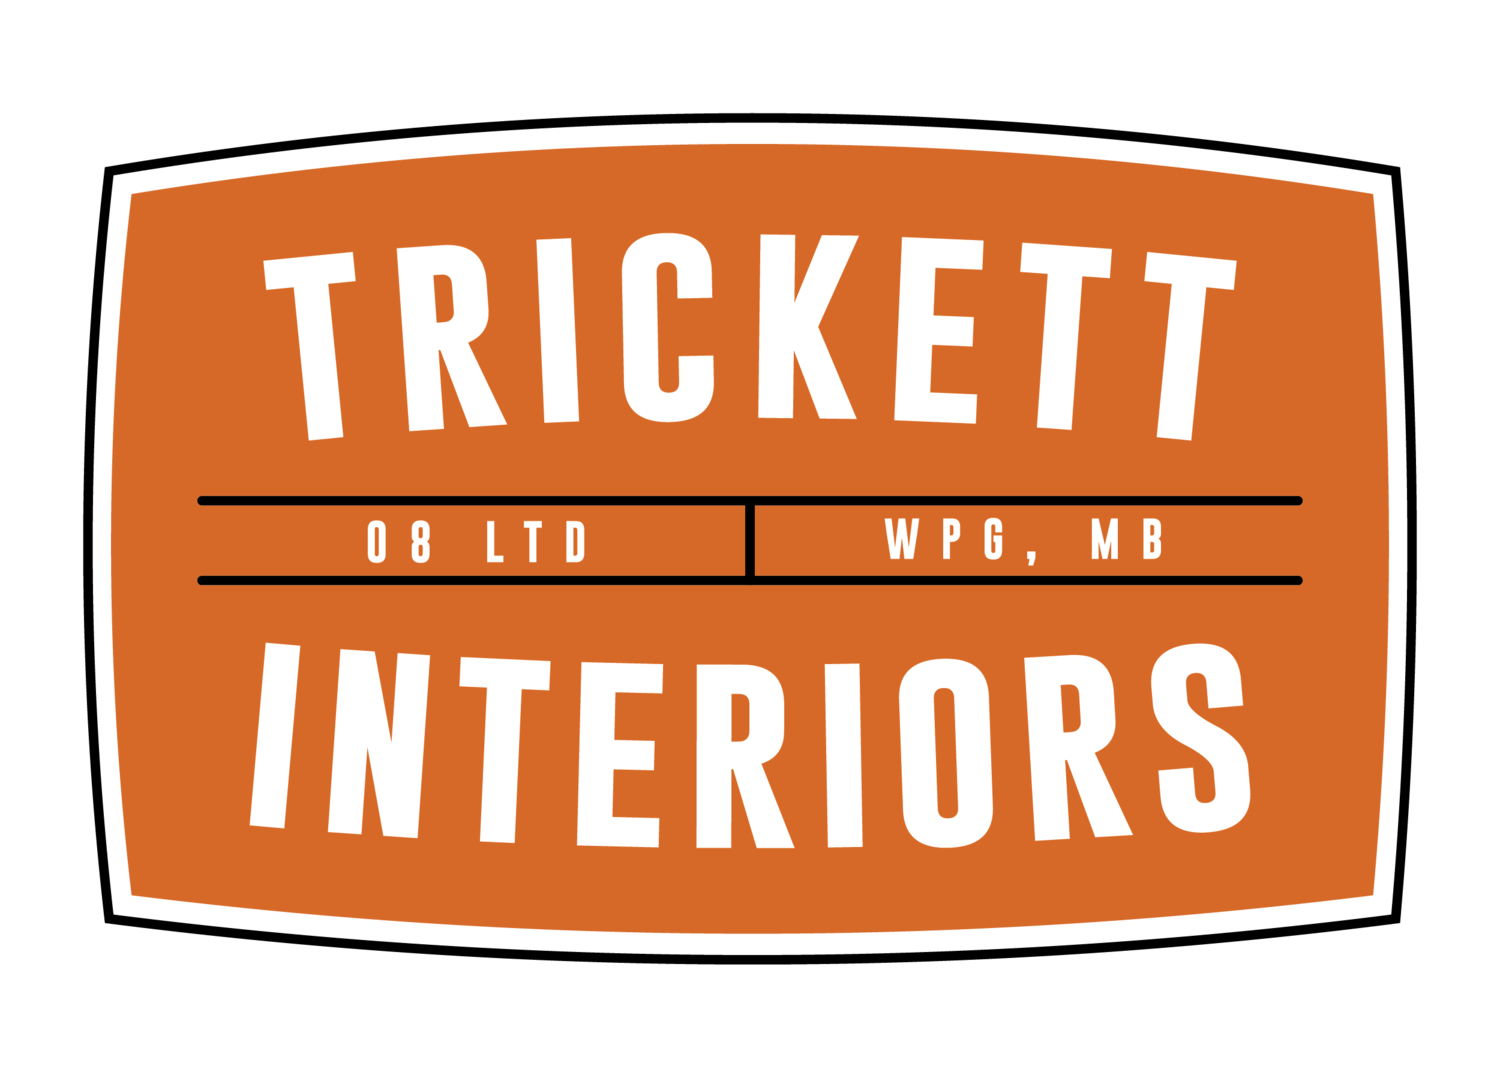 Trickett Interiors Ltd.